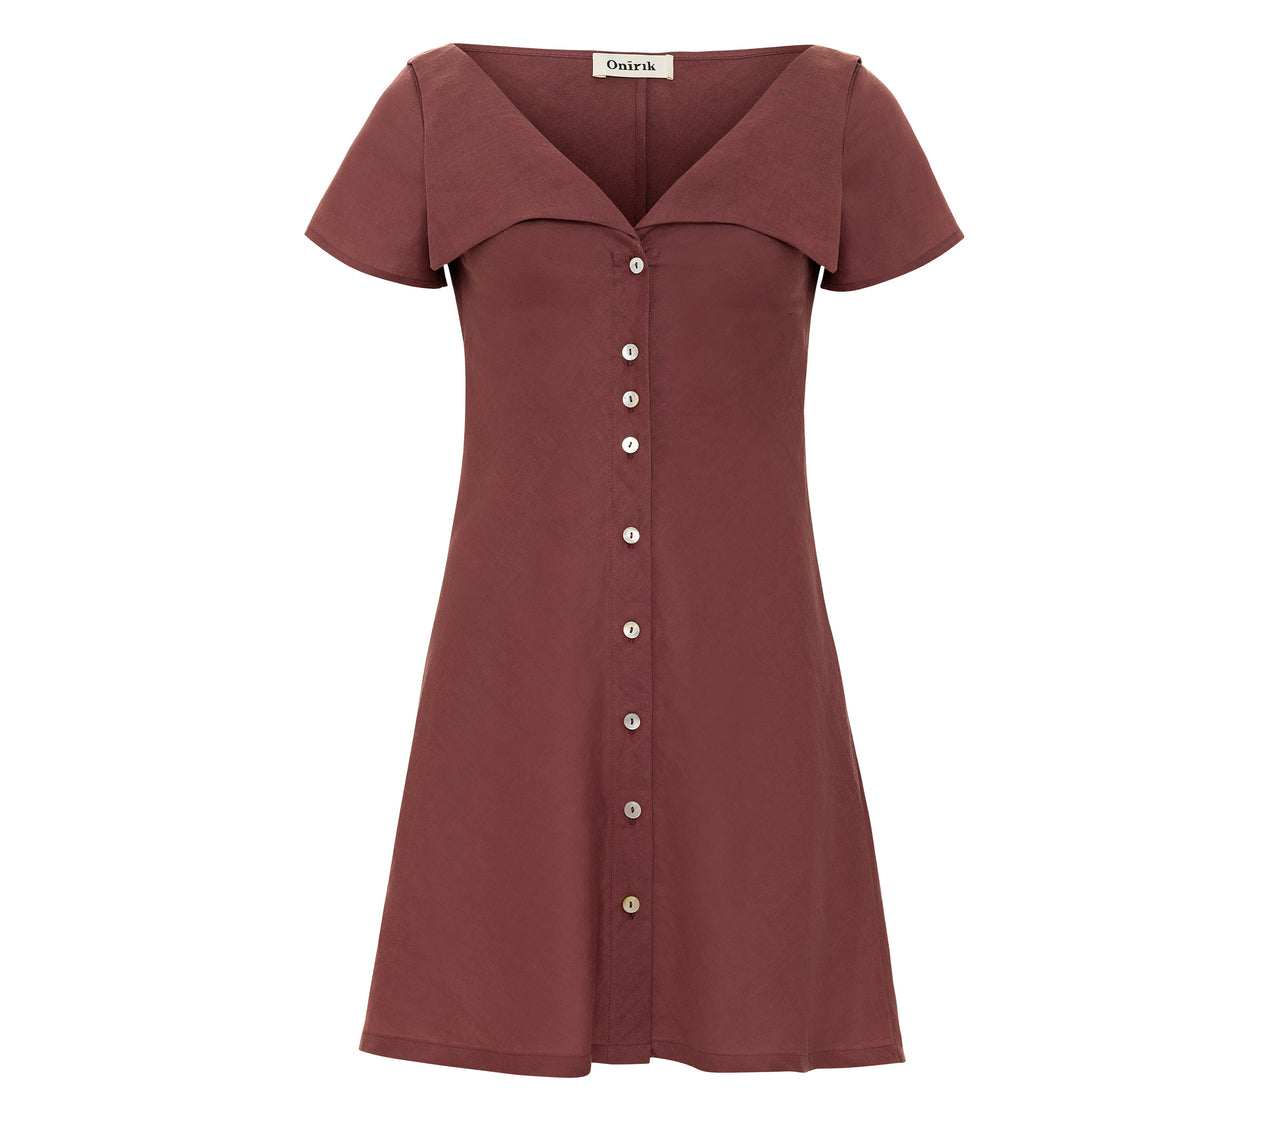 Gabi Short Dress / 100% Linen in Plum with Shell Buttons